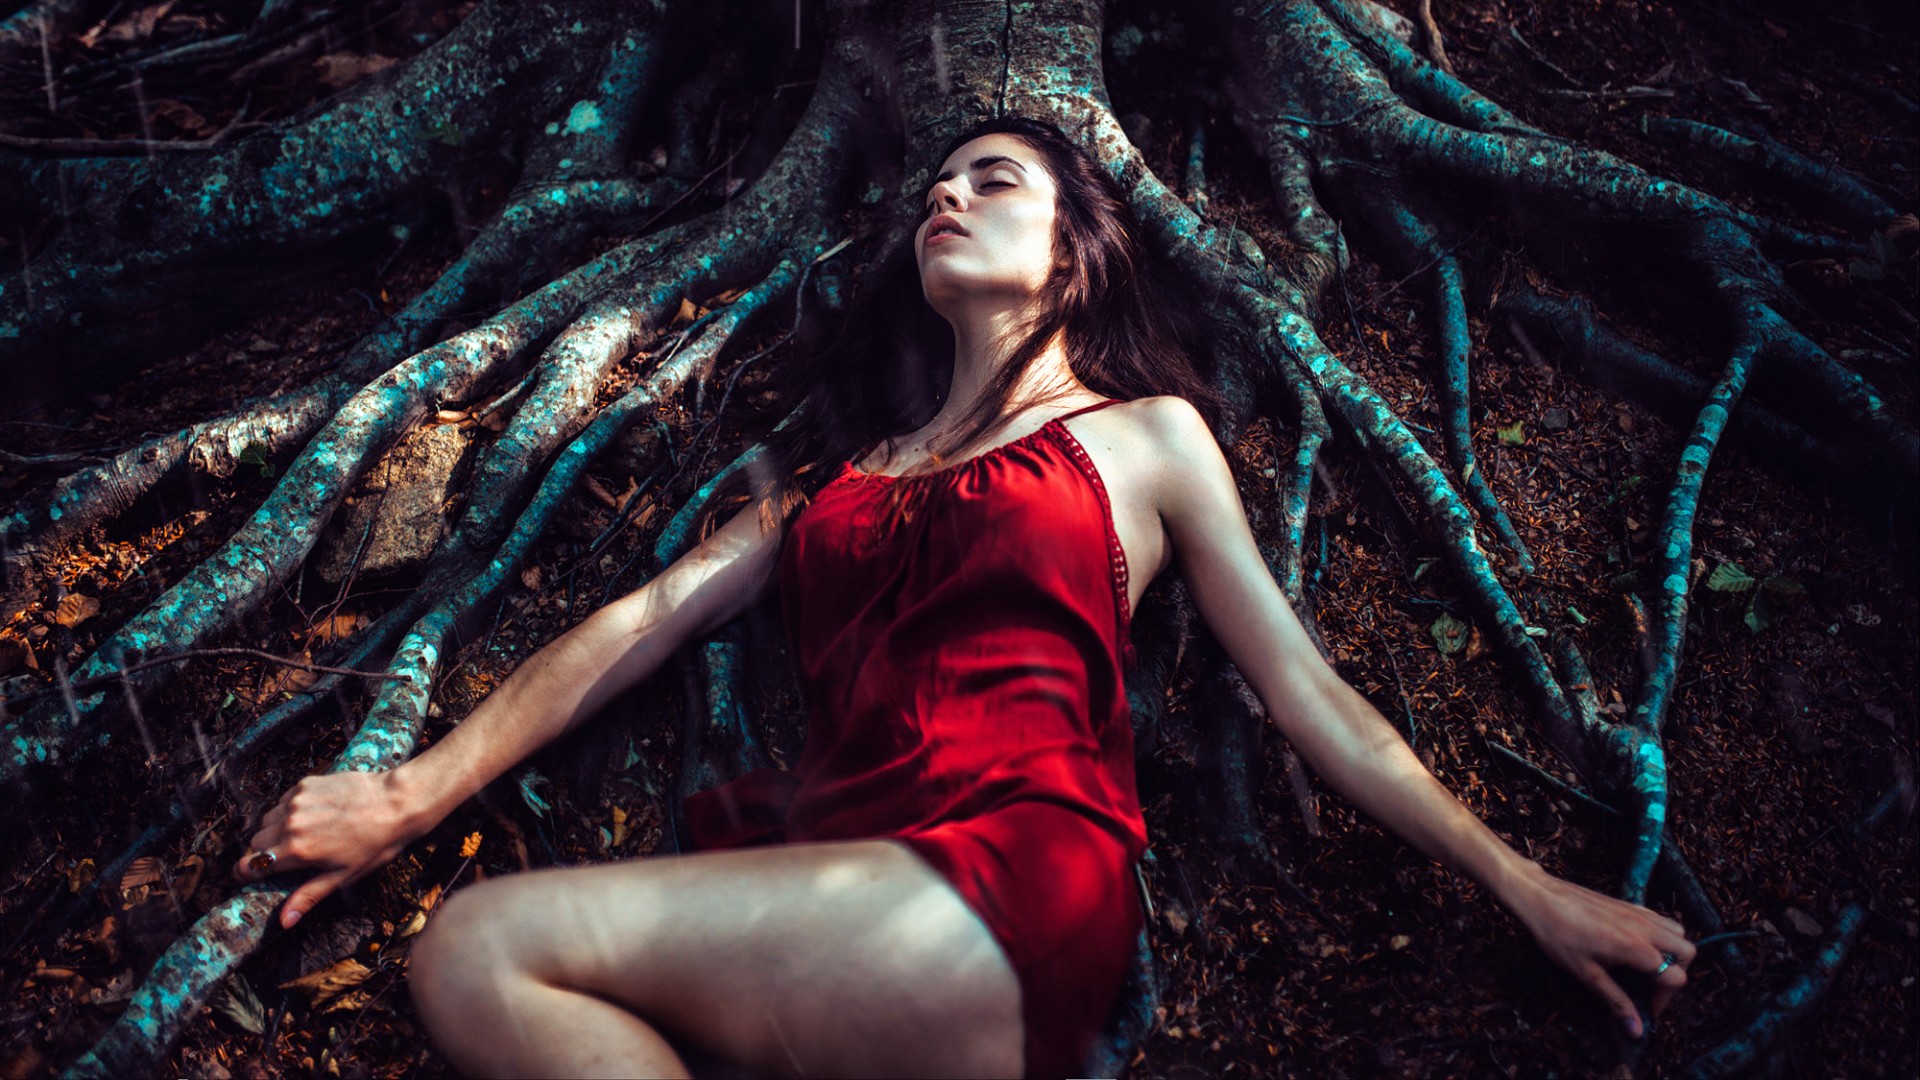 森林的图片,大树,树根,休息,红色睡衣,女孩的梦想,唯美美女壁纸